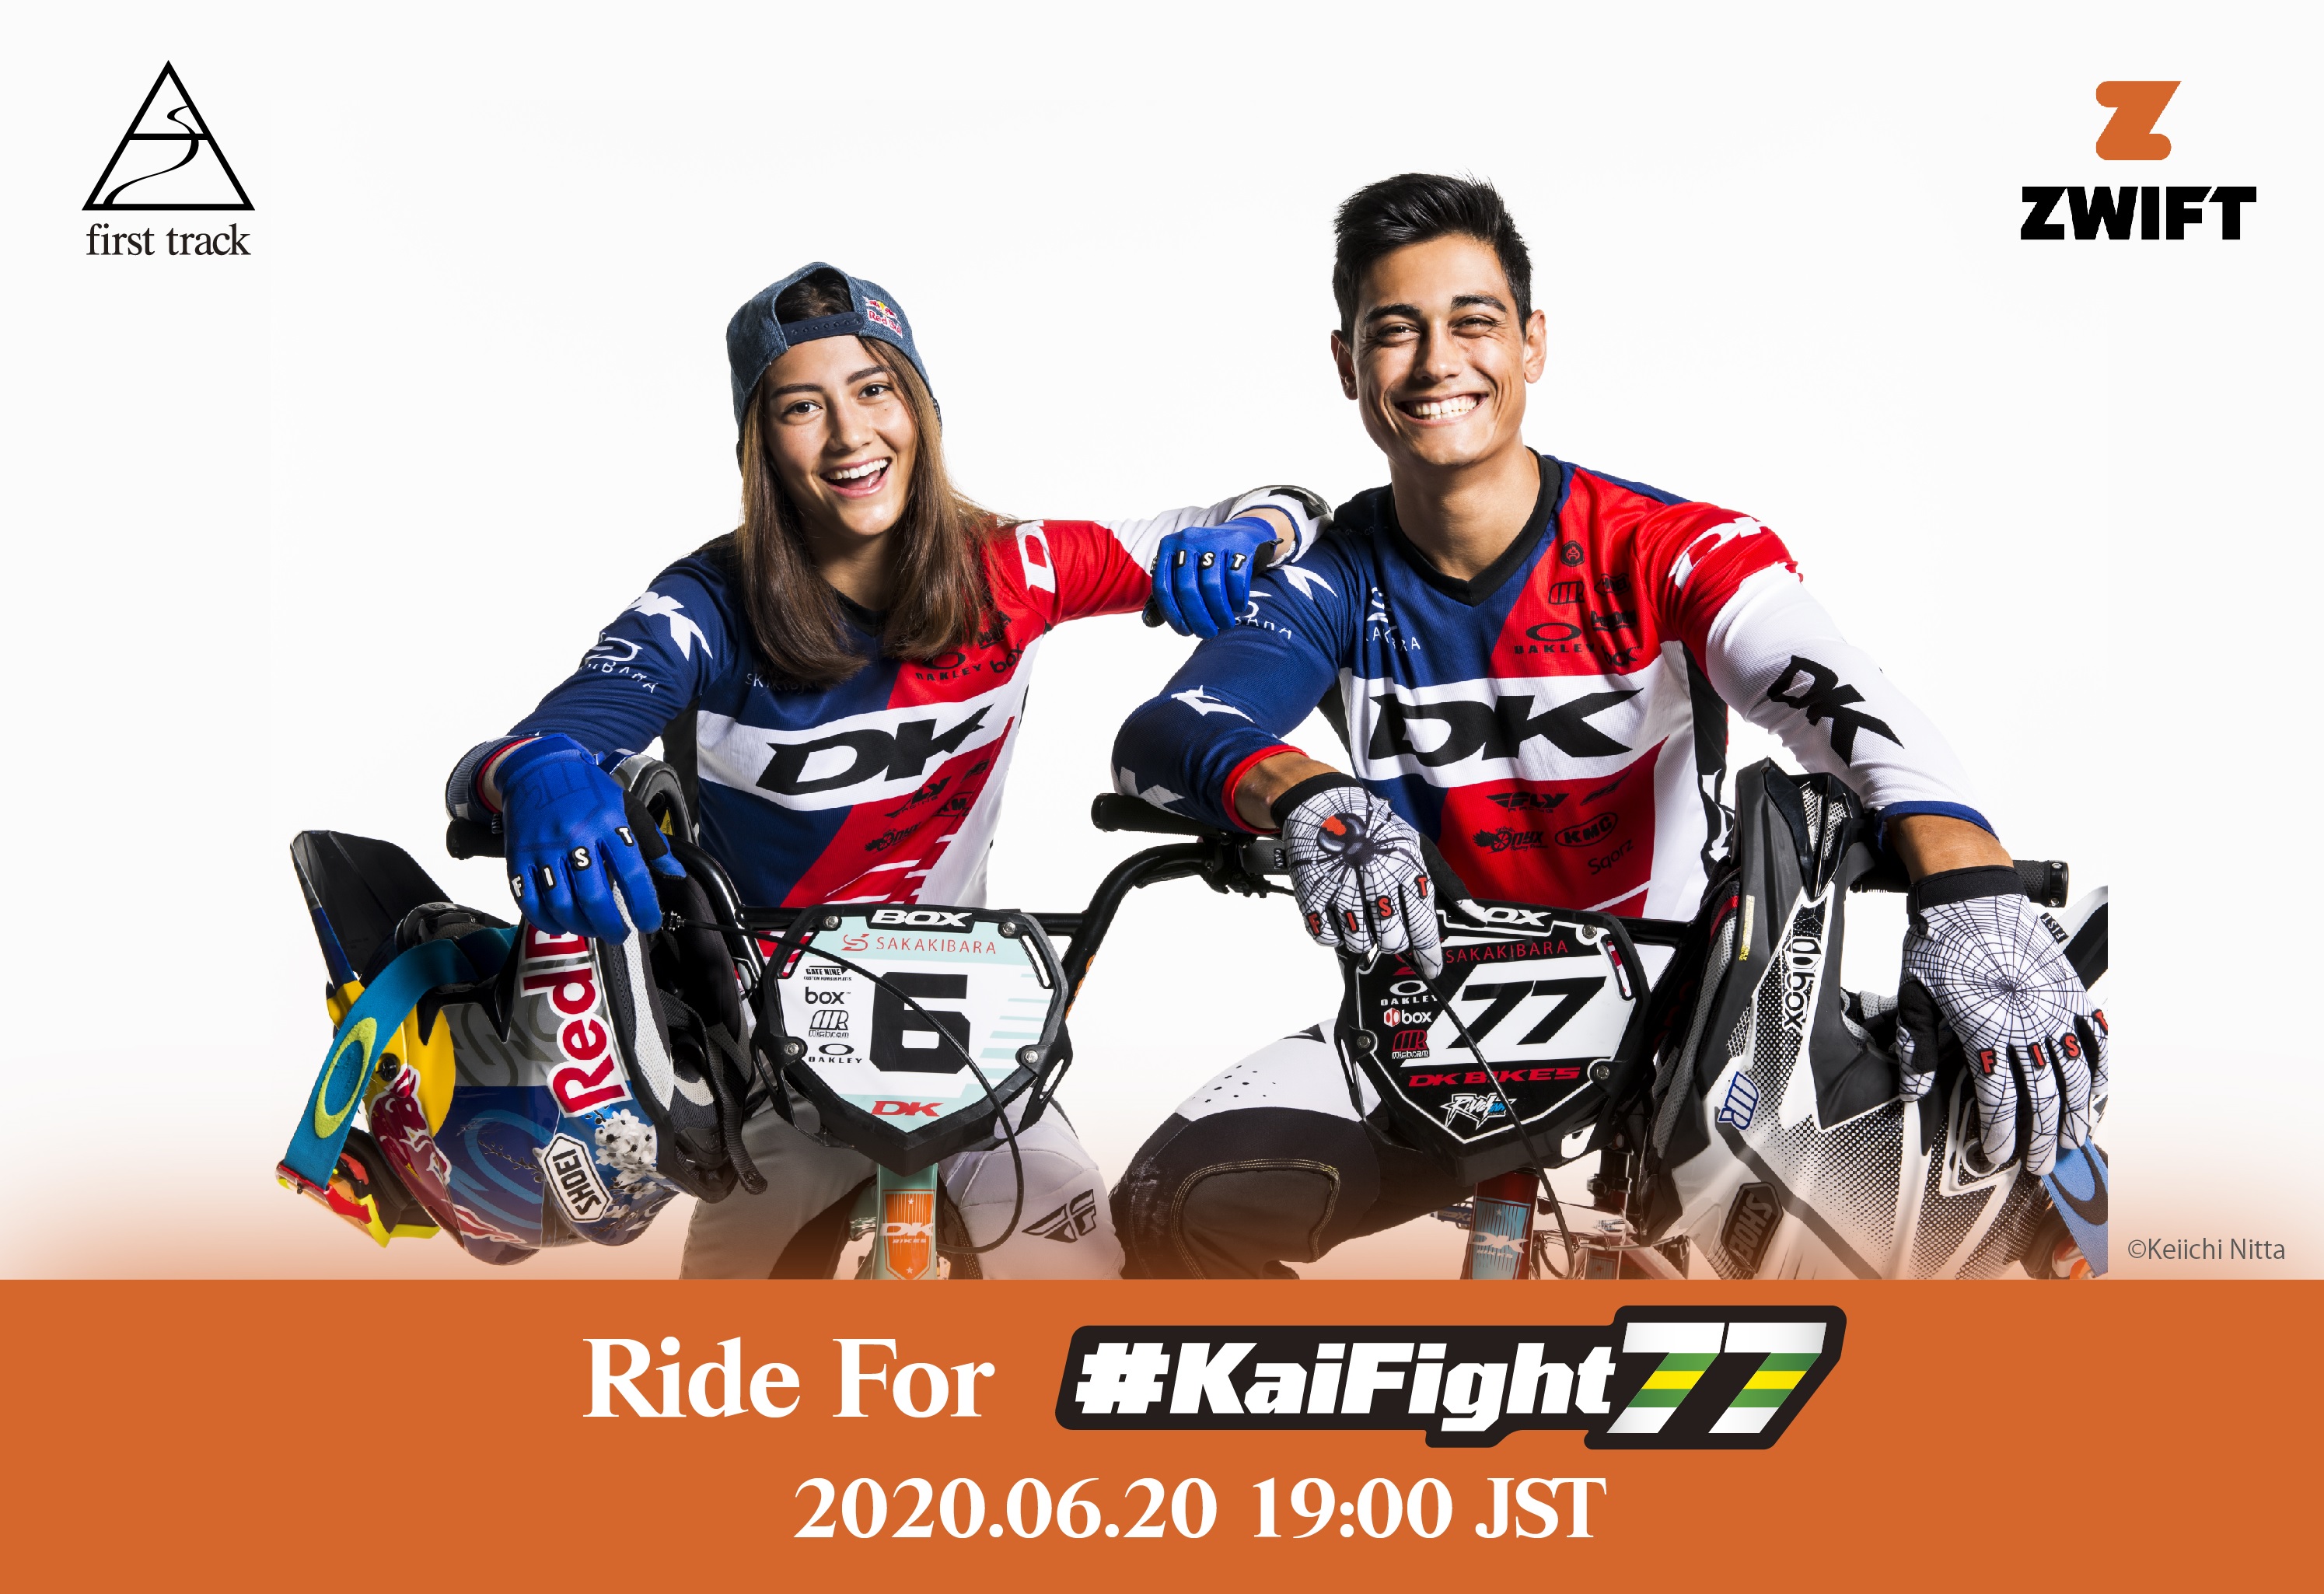 榊原魁のチャリティーライド 「Ride for #KaiFight77」開催のお知らせ